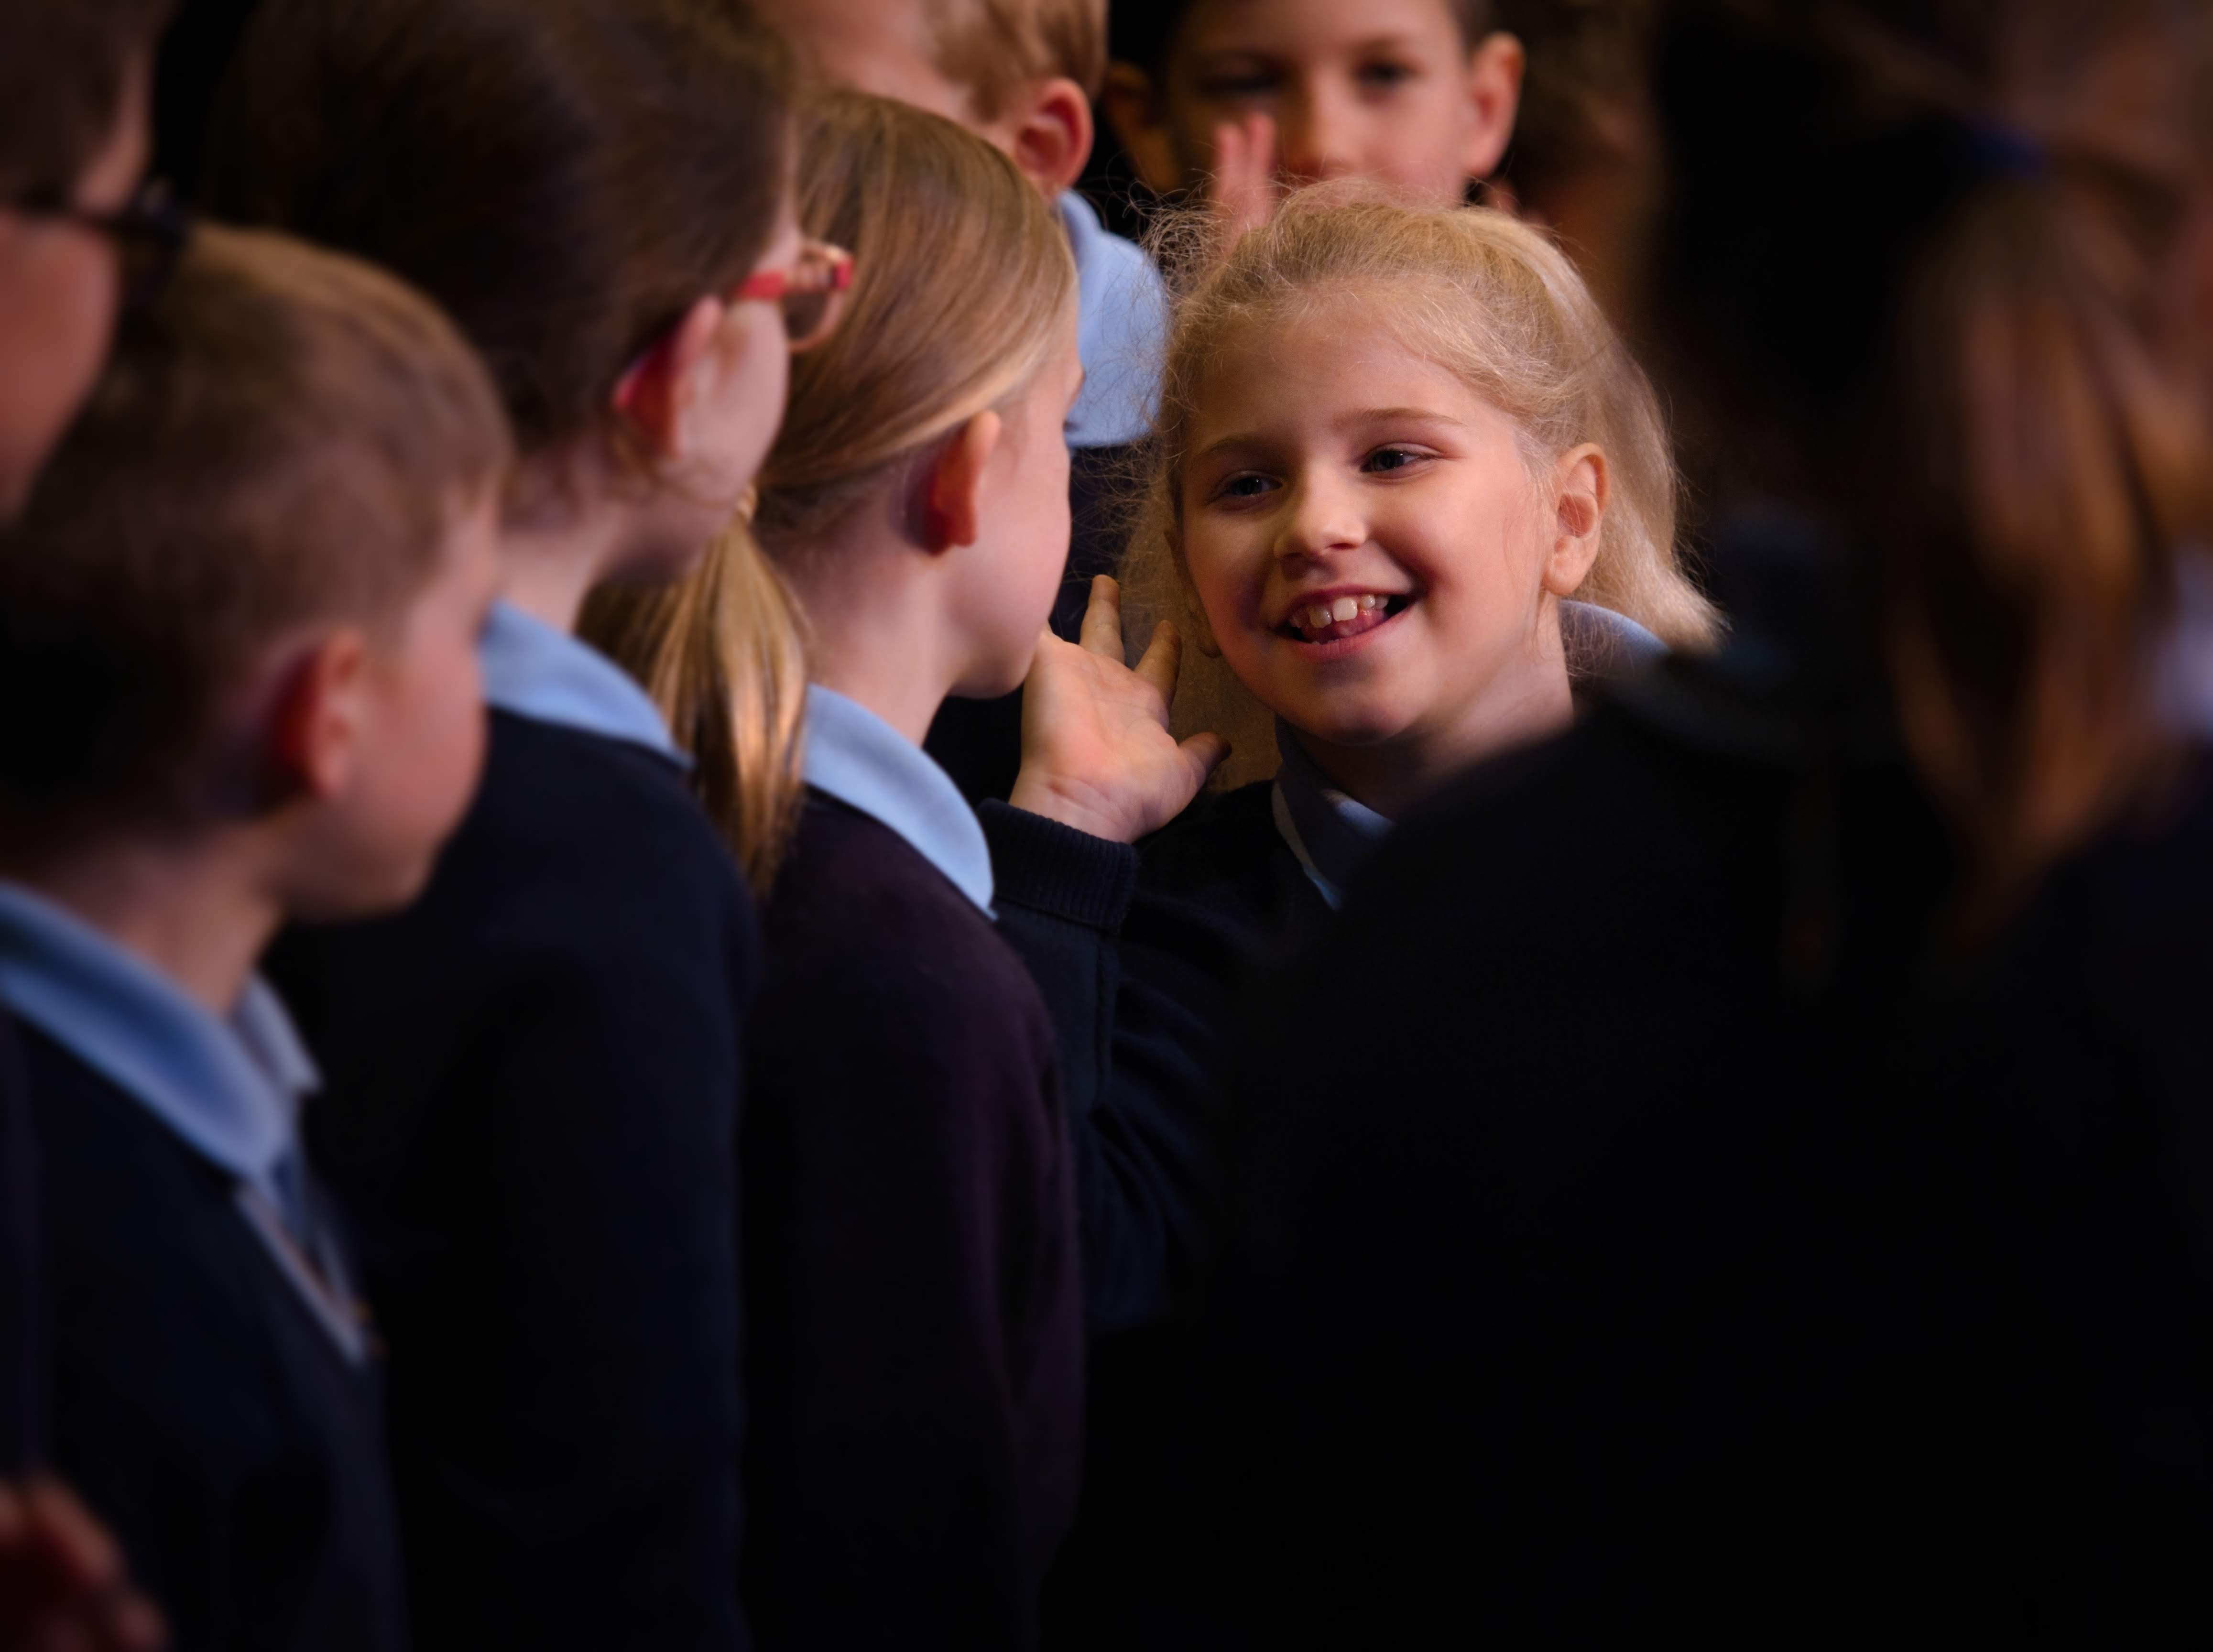 WGE Choral Chairo Christian School Pakenham - Cantabile Choir Perform